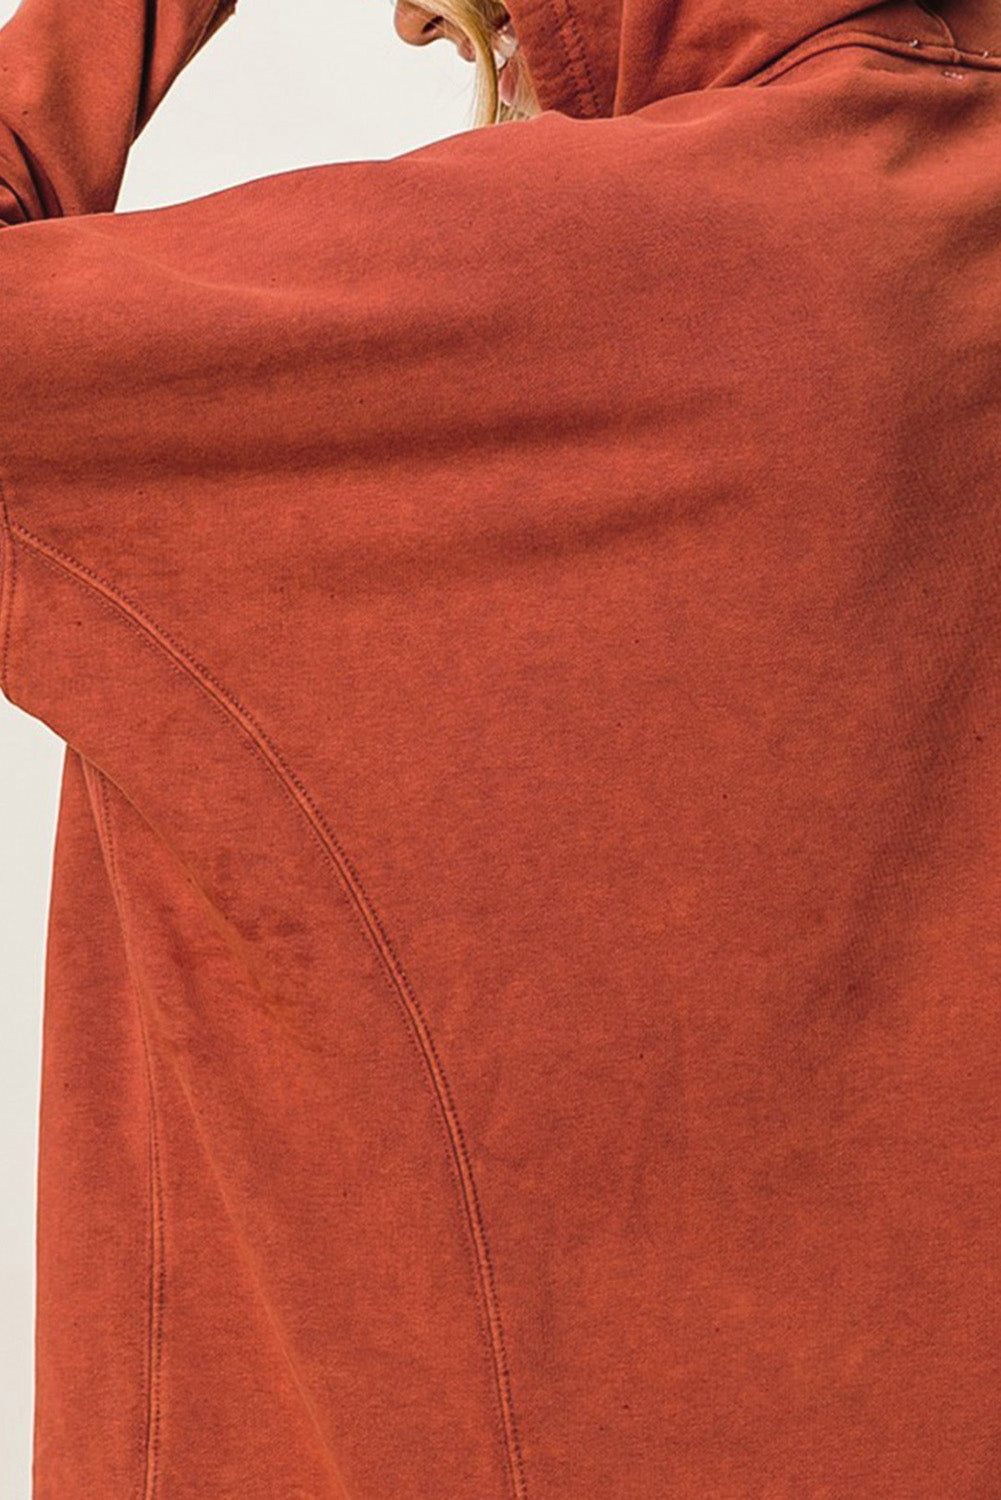 Orangefarbener, übergroßer Pullover-Hoodie mit Druckknöpfen und Daumenloch